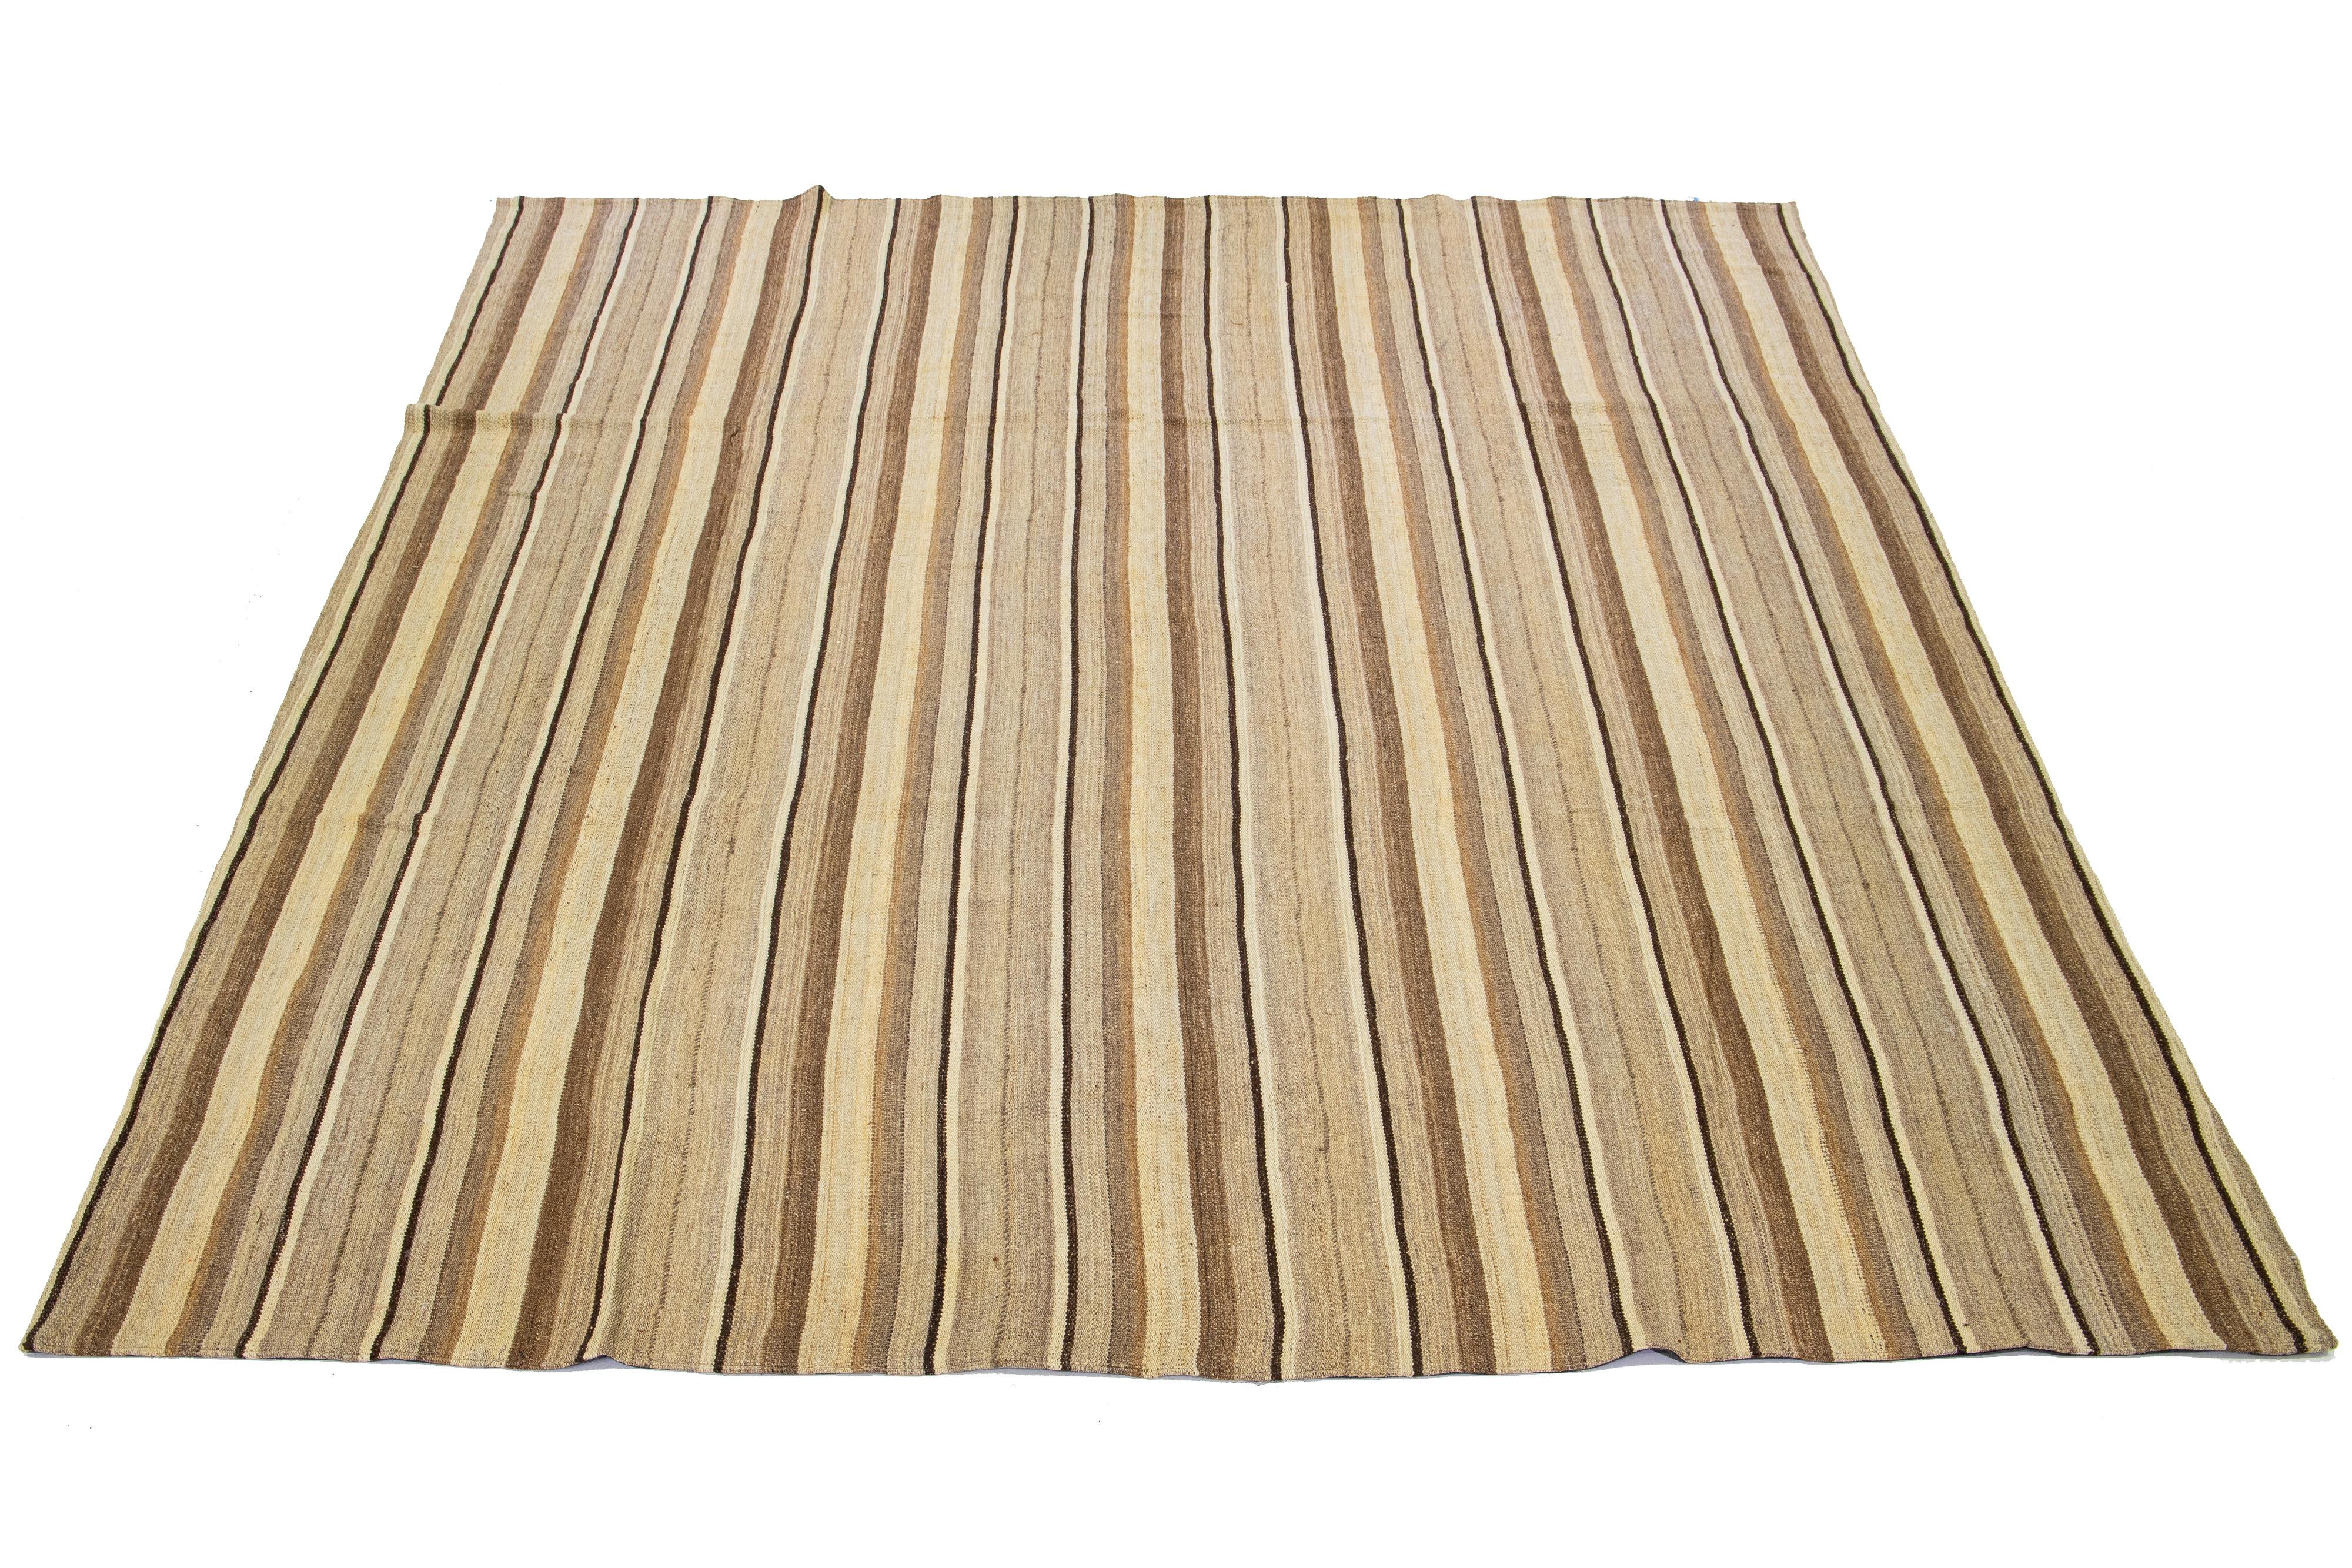 Dieser indische Teppich zeigt ein modernes Flachgewebe im Kilim-Stil, das aus Wolle gefertigt ist. Der Teppich weist ein elegantes Streifenmuster in Beige- und Brauntönen auf.

Dieser Teppich misst 10'9